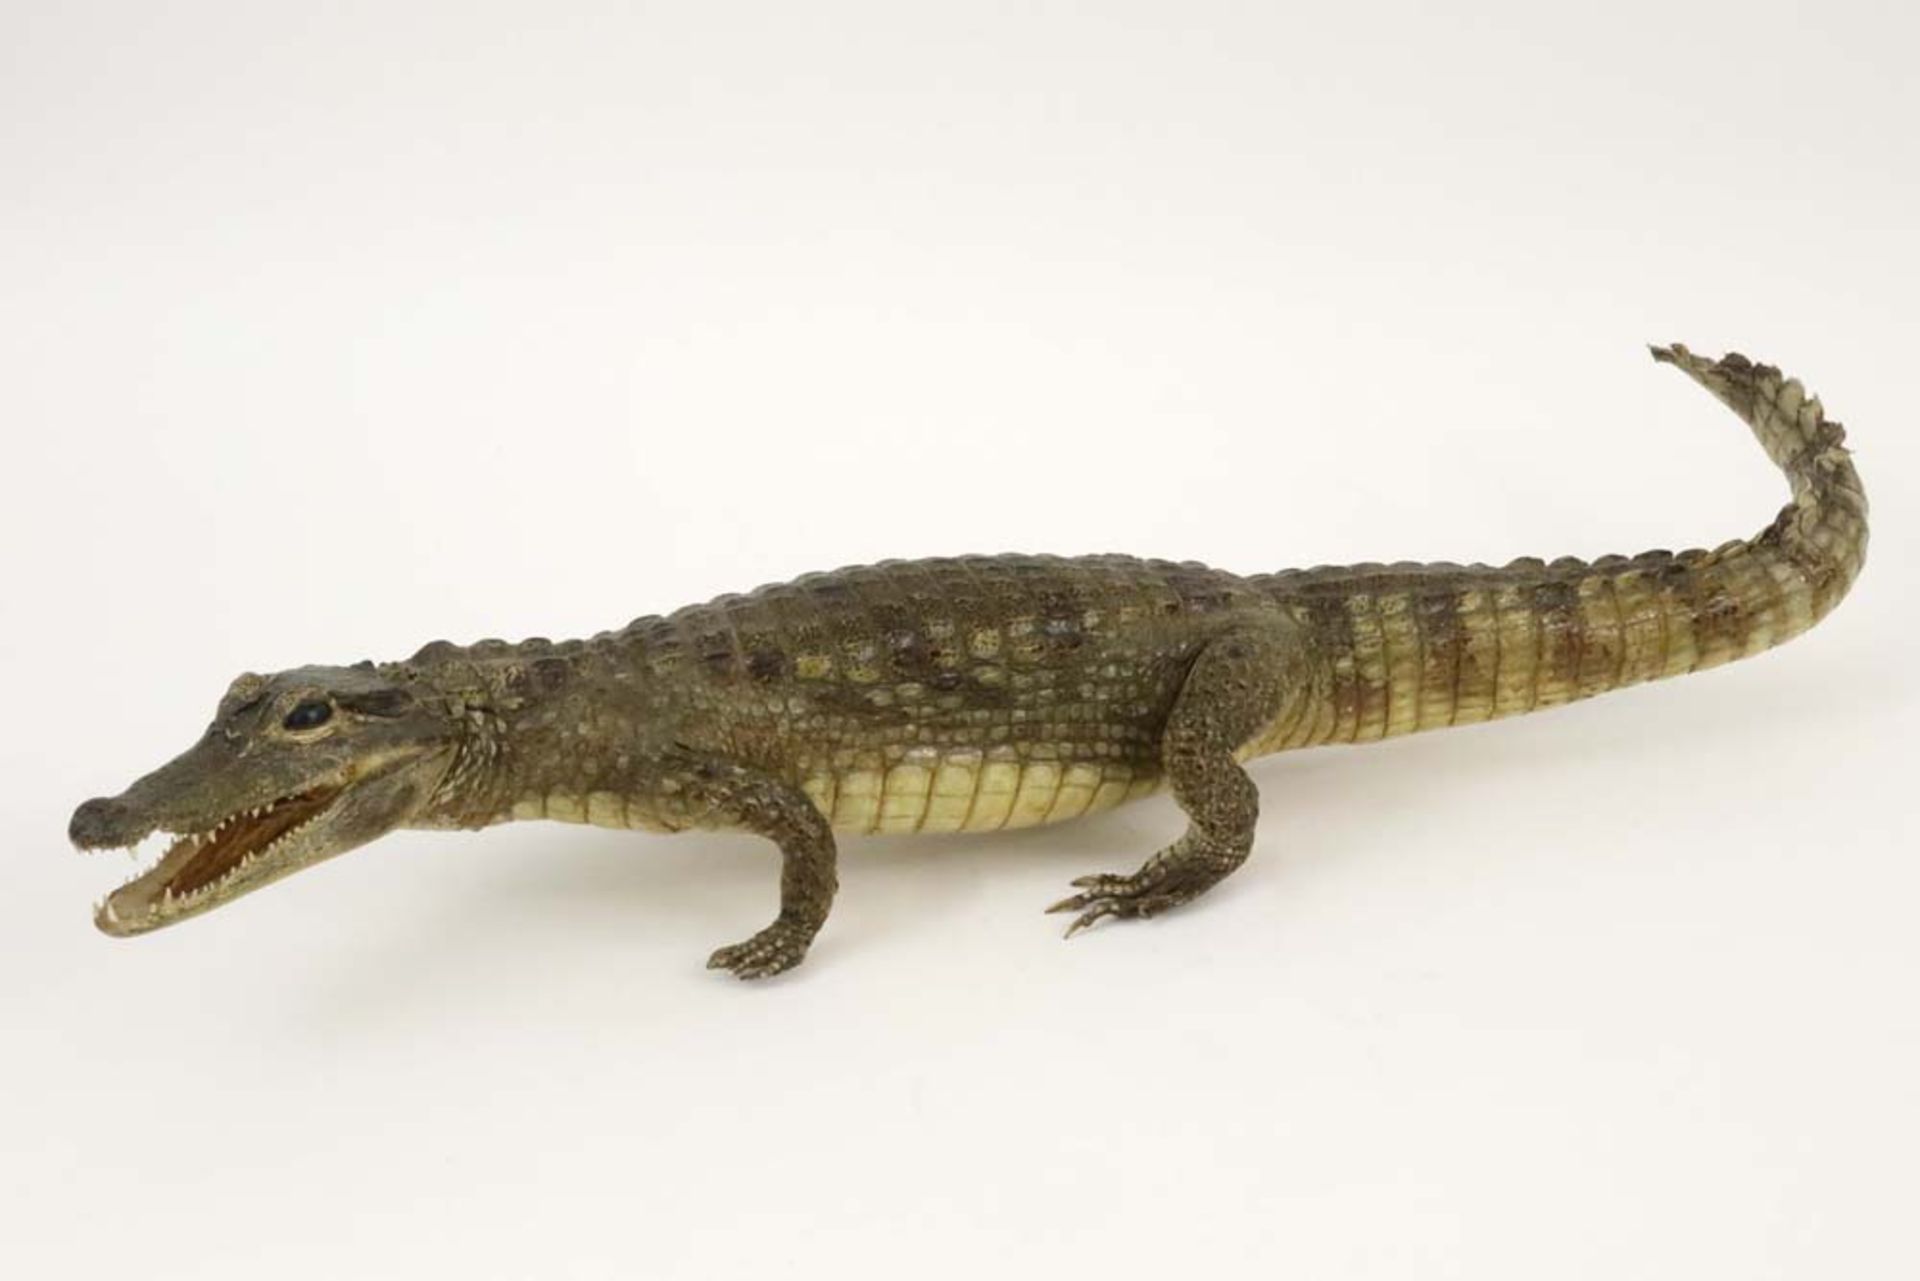 taxidermy : alligator || Taxidermie : alligator - lengte : 77 cm